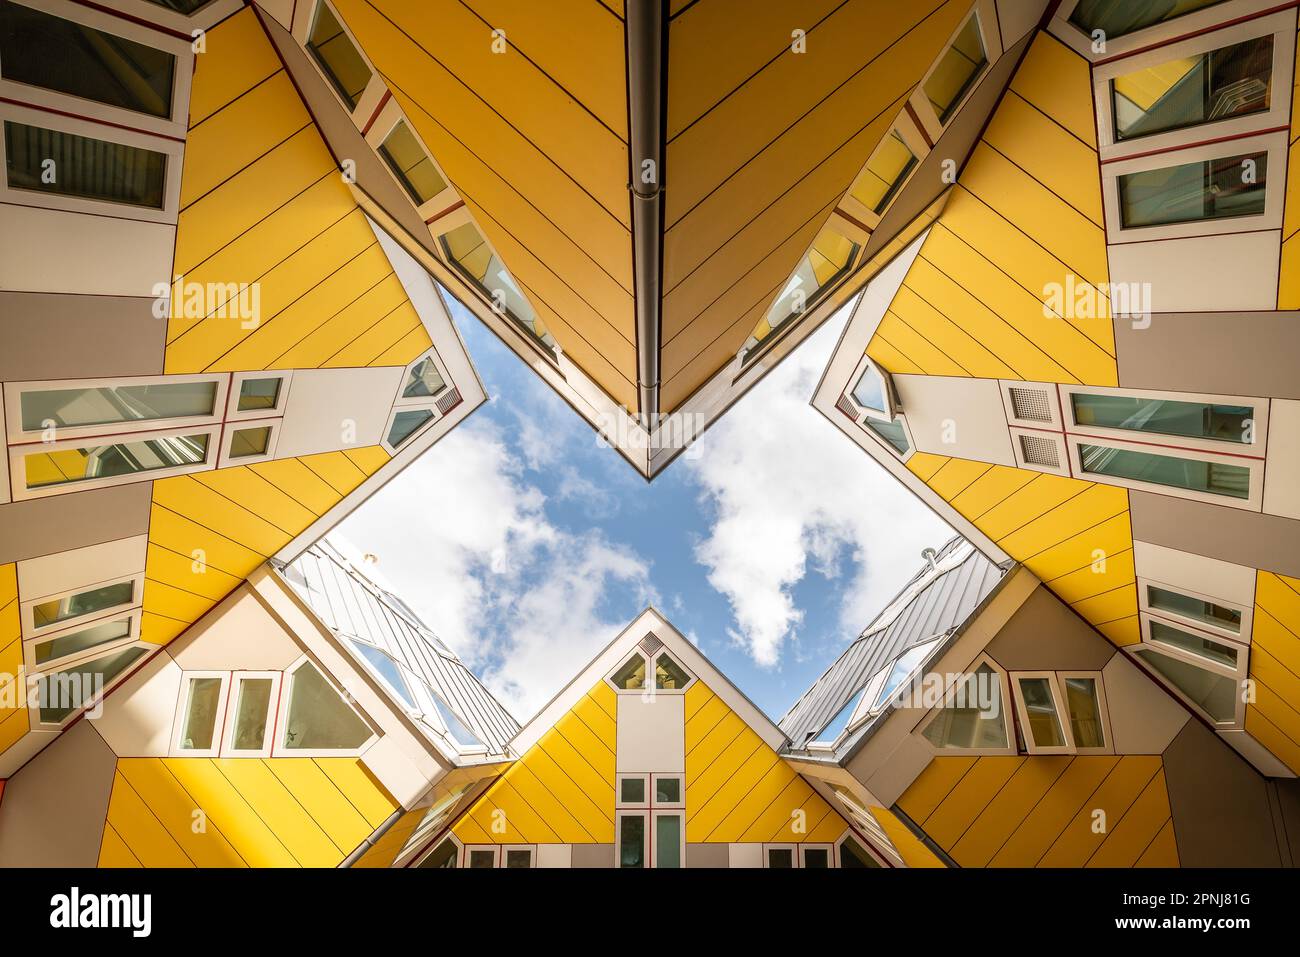 Les maisons du Cube sont des attractions célèbres à Rotterdam en raison de leurs formes. Il y a des bureaux, des appartements, et une auberge de jeunesse aussi. Cube maisons ou Kubuwoningen en néerlandais a Banque D'Images